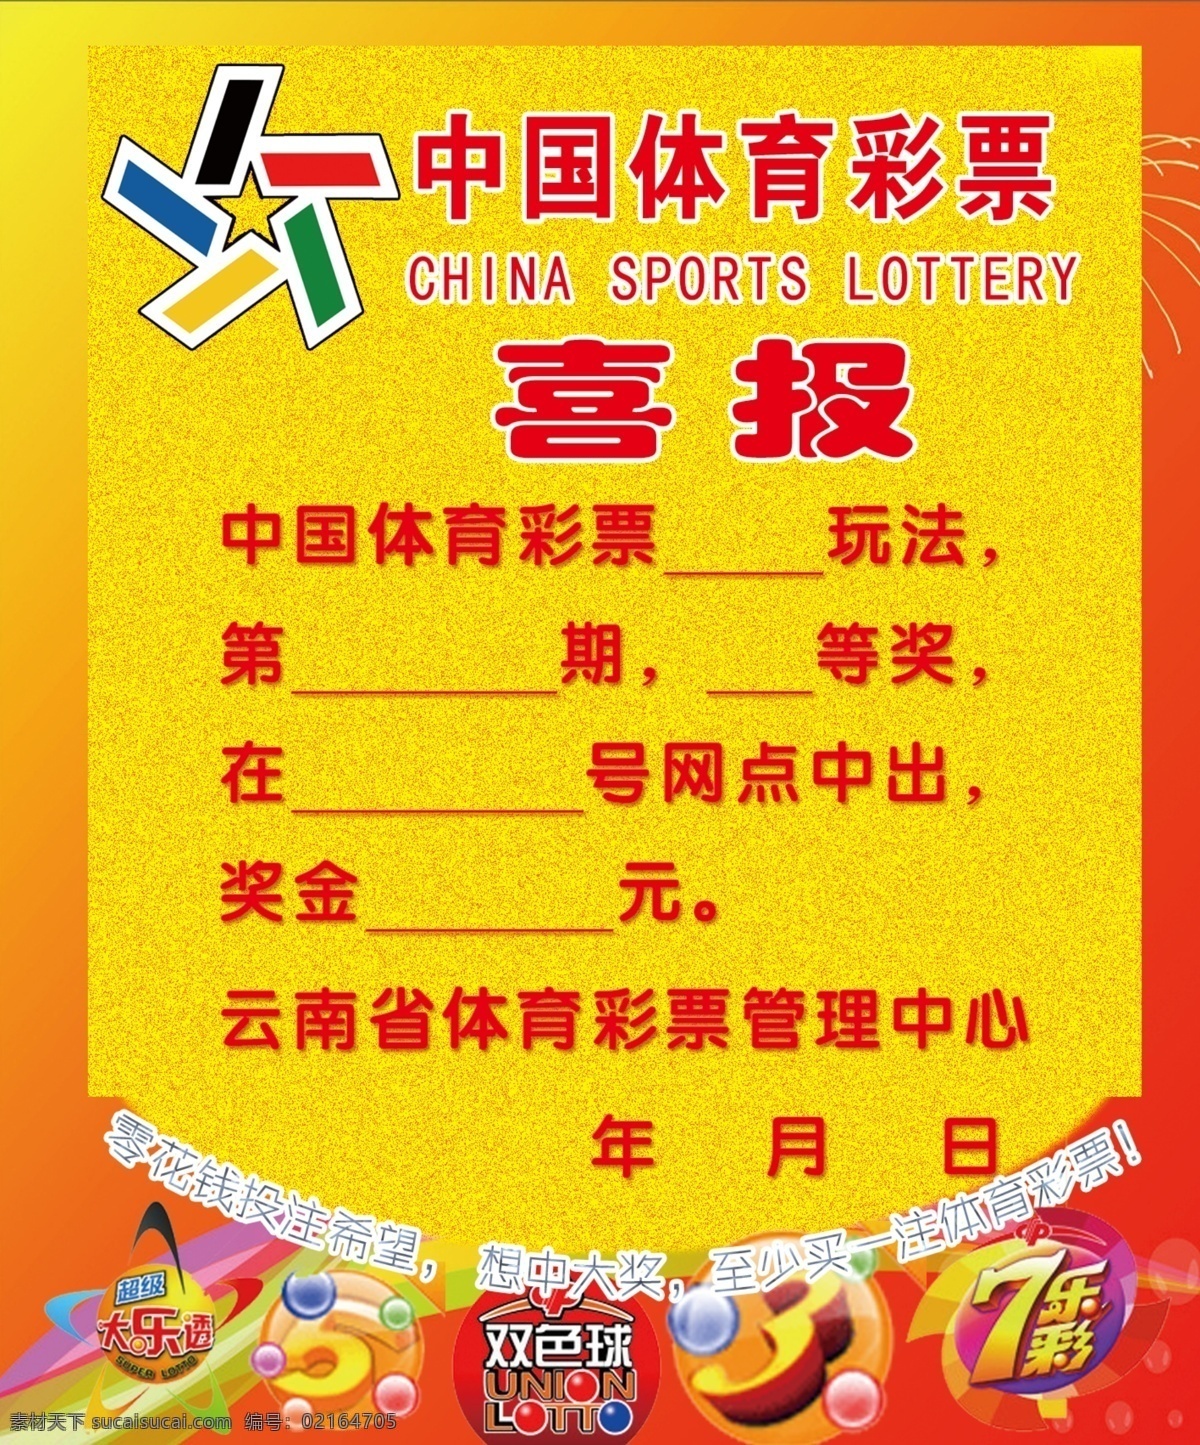 中国 体育彩票 喜报 体彩 中奖公告 中奖公示 彩票 广告设计模板 源文件